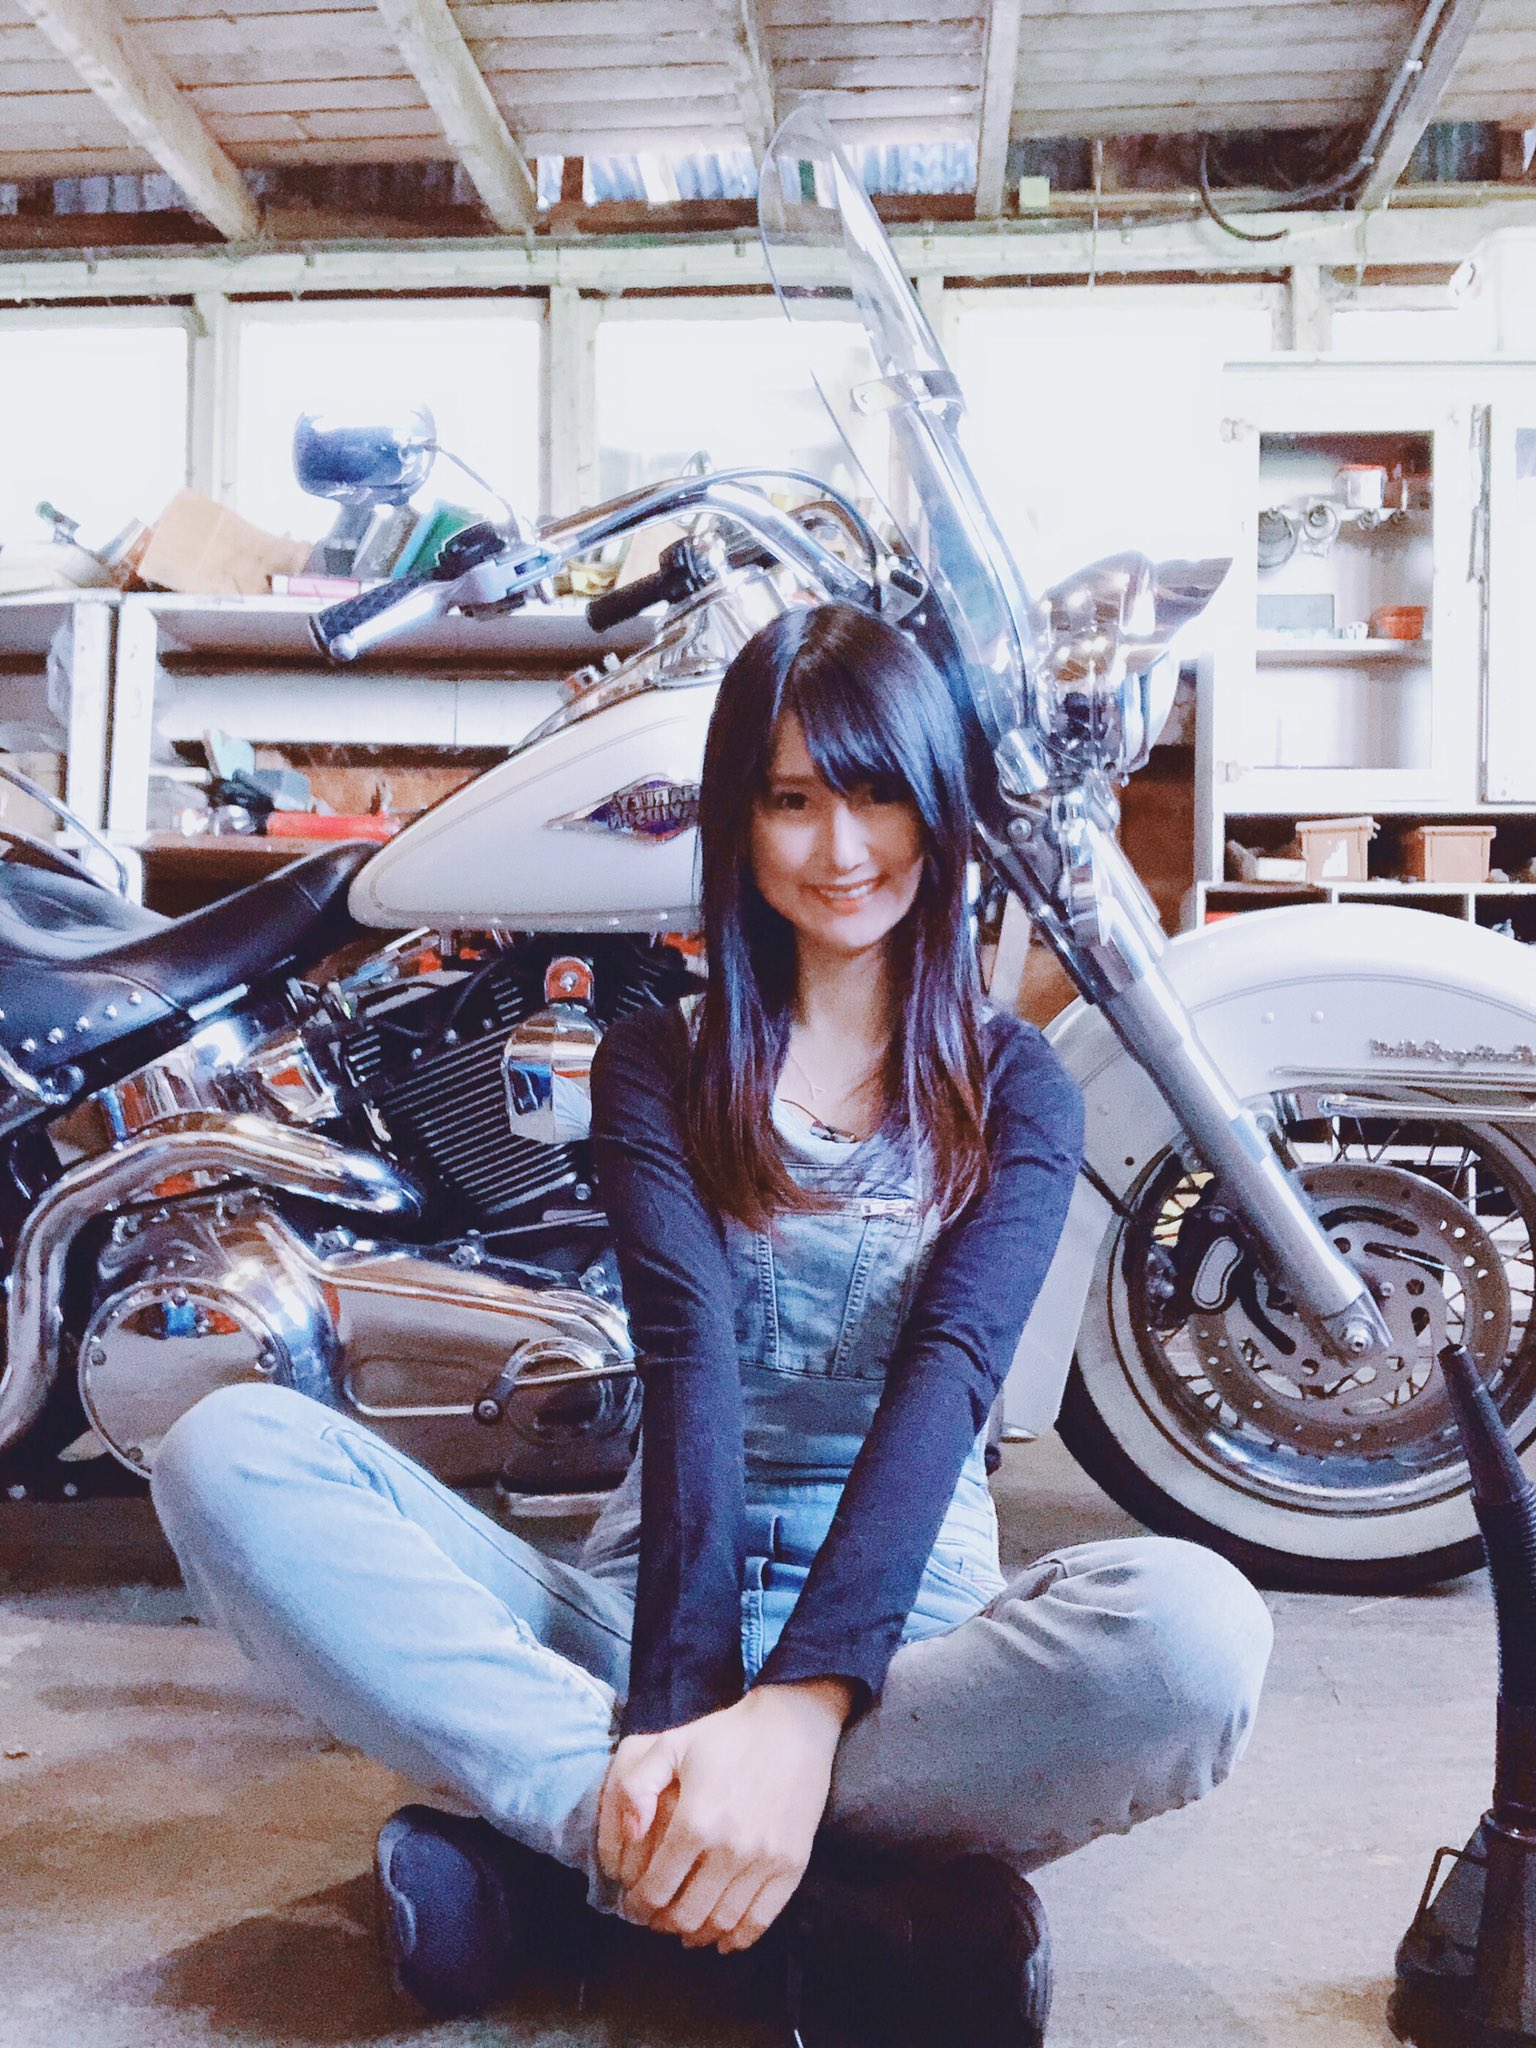 Noah のあち バイク女子 名前 のあち 性別 女 身長 159cm 住み 海外 車種 ハーレー Flstc 好き Diy 電気工事 嫌い G 一言 Youtubeでモトブログを始めました Club Harleyに掲載された時のお写真も バイク乗りとして軽く自己紹介 バイク乗りと繋がりたい